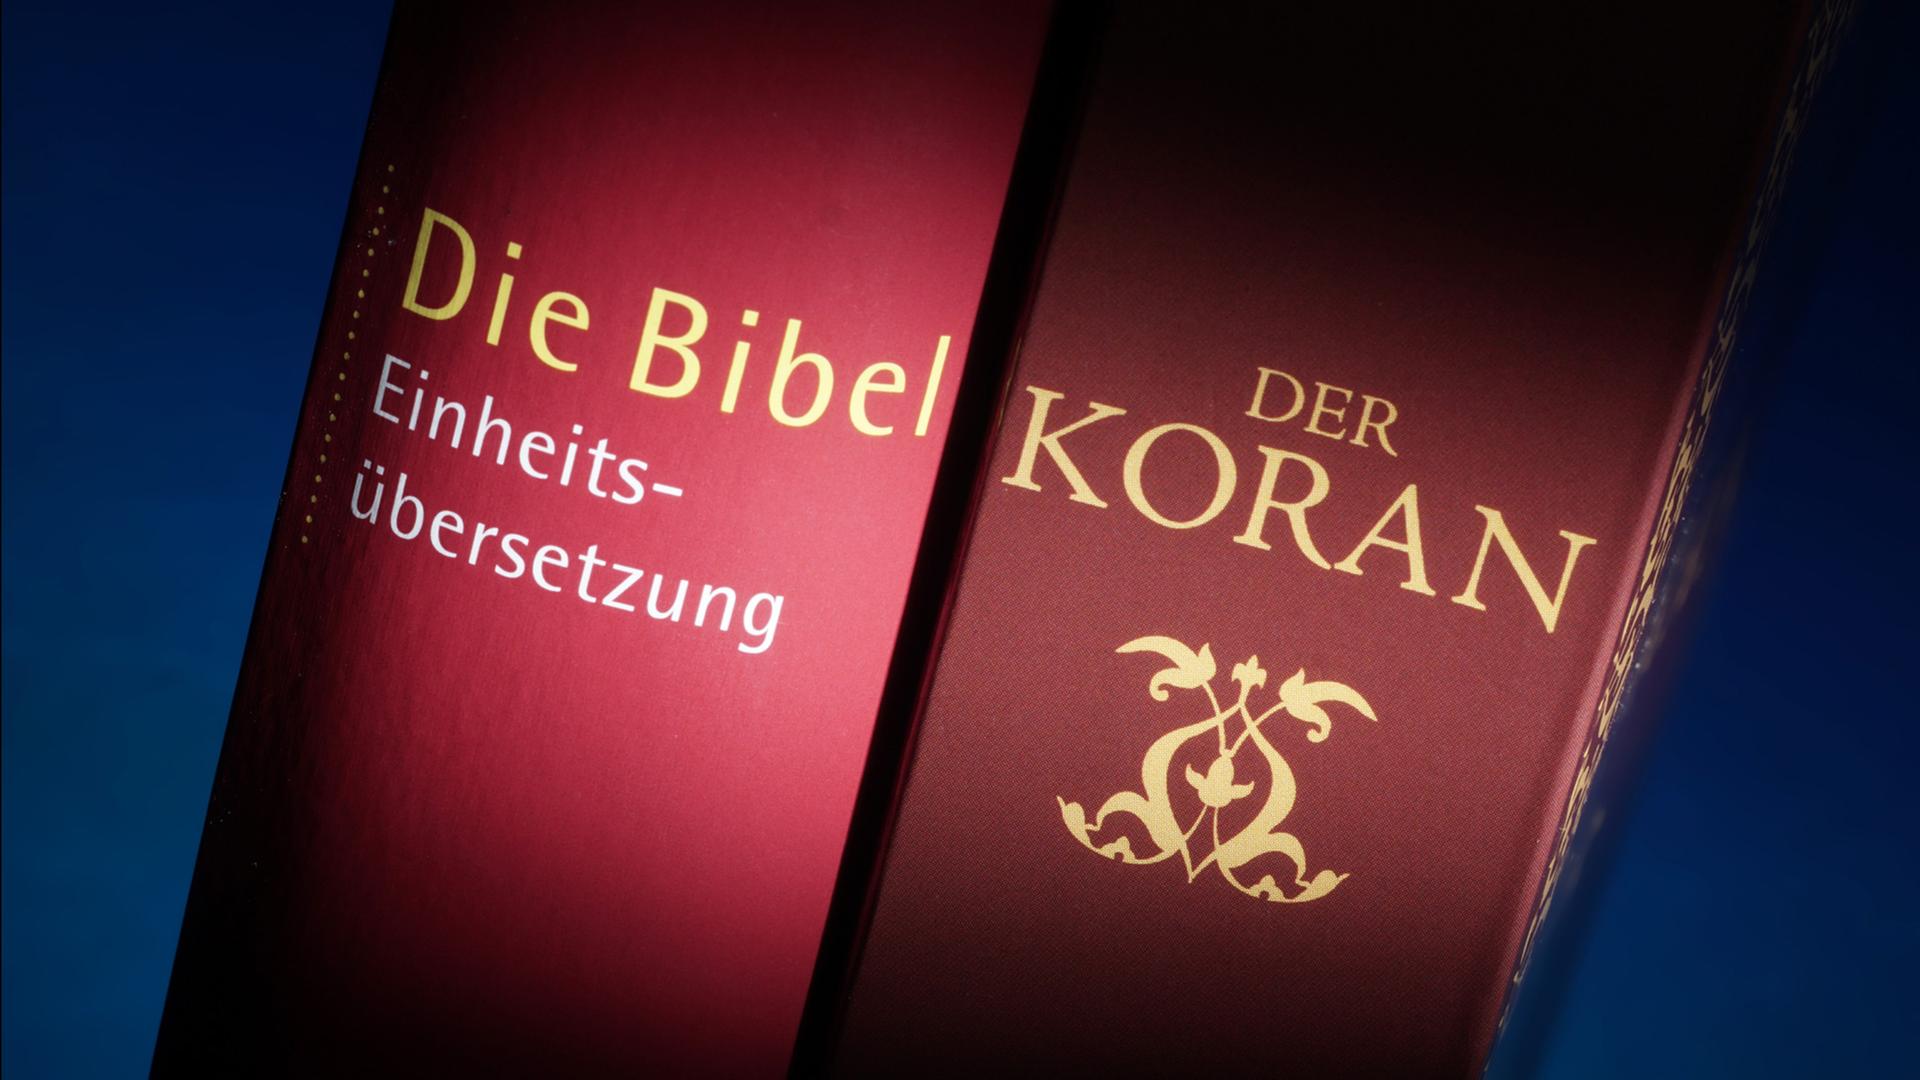 Eine Bibel und eine Ausgabe des Koran